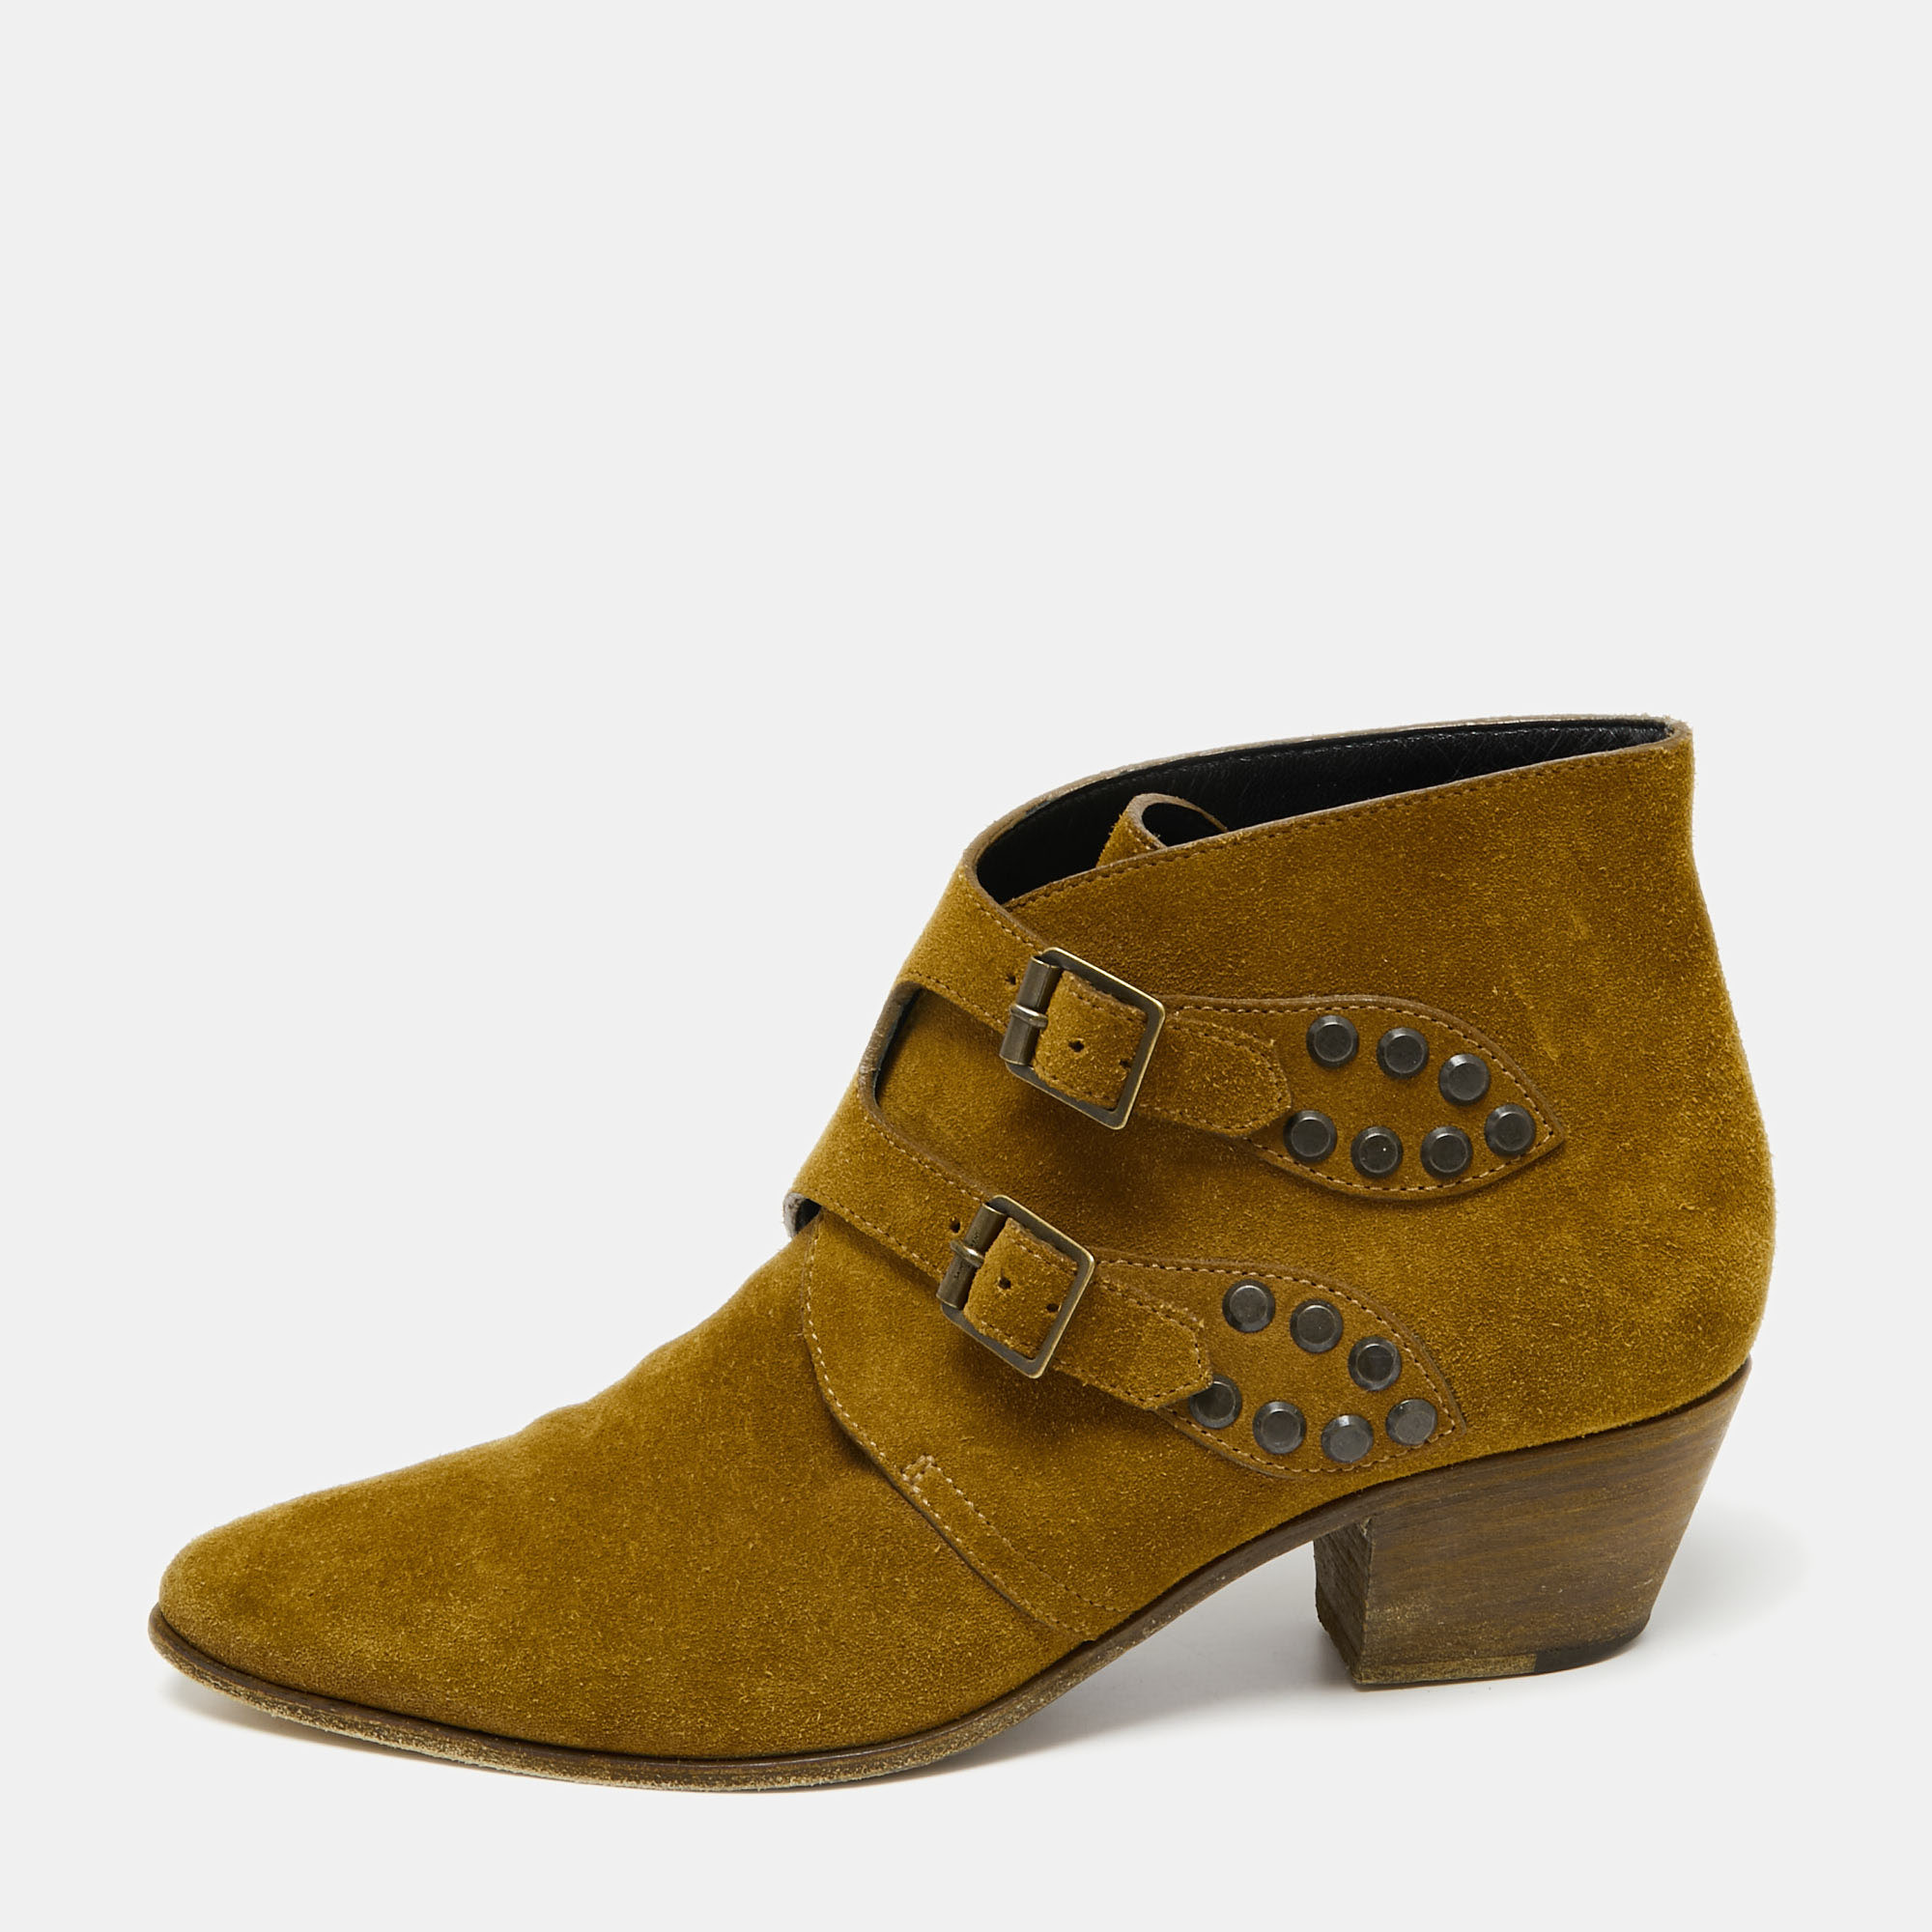 Saint laurent paris saint laurent brown suede studded ankle boots size 38.5